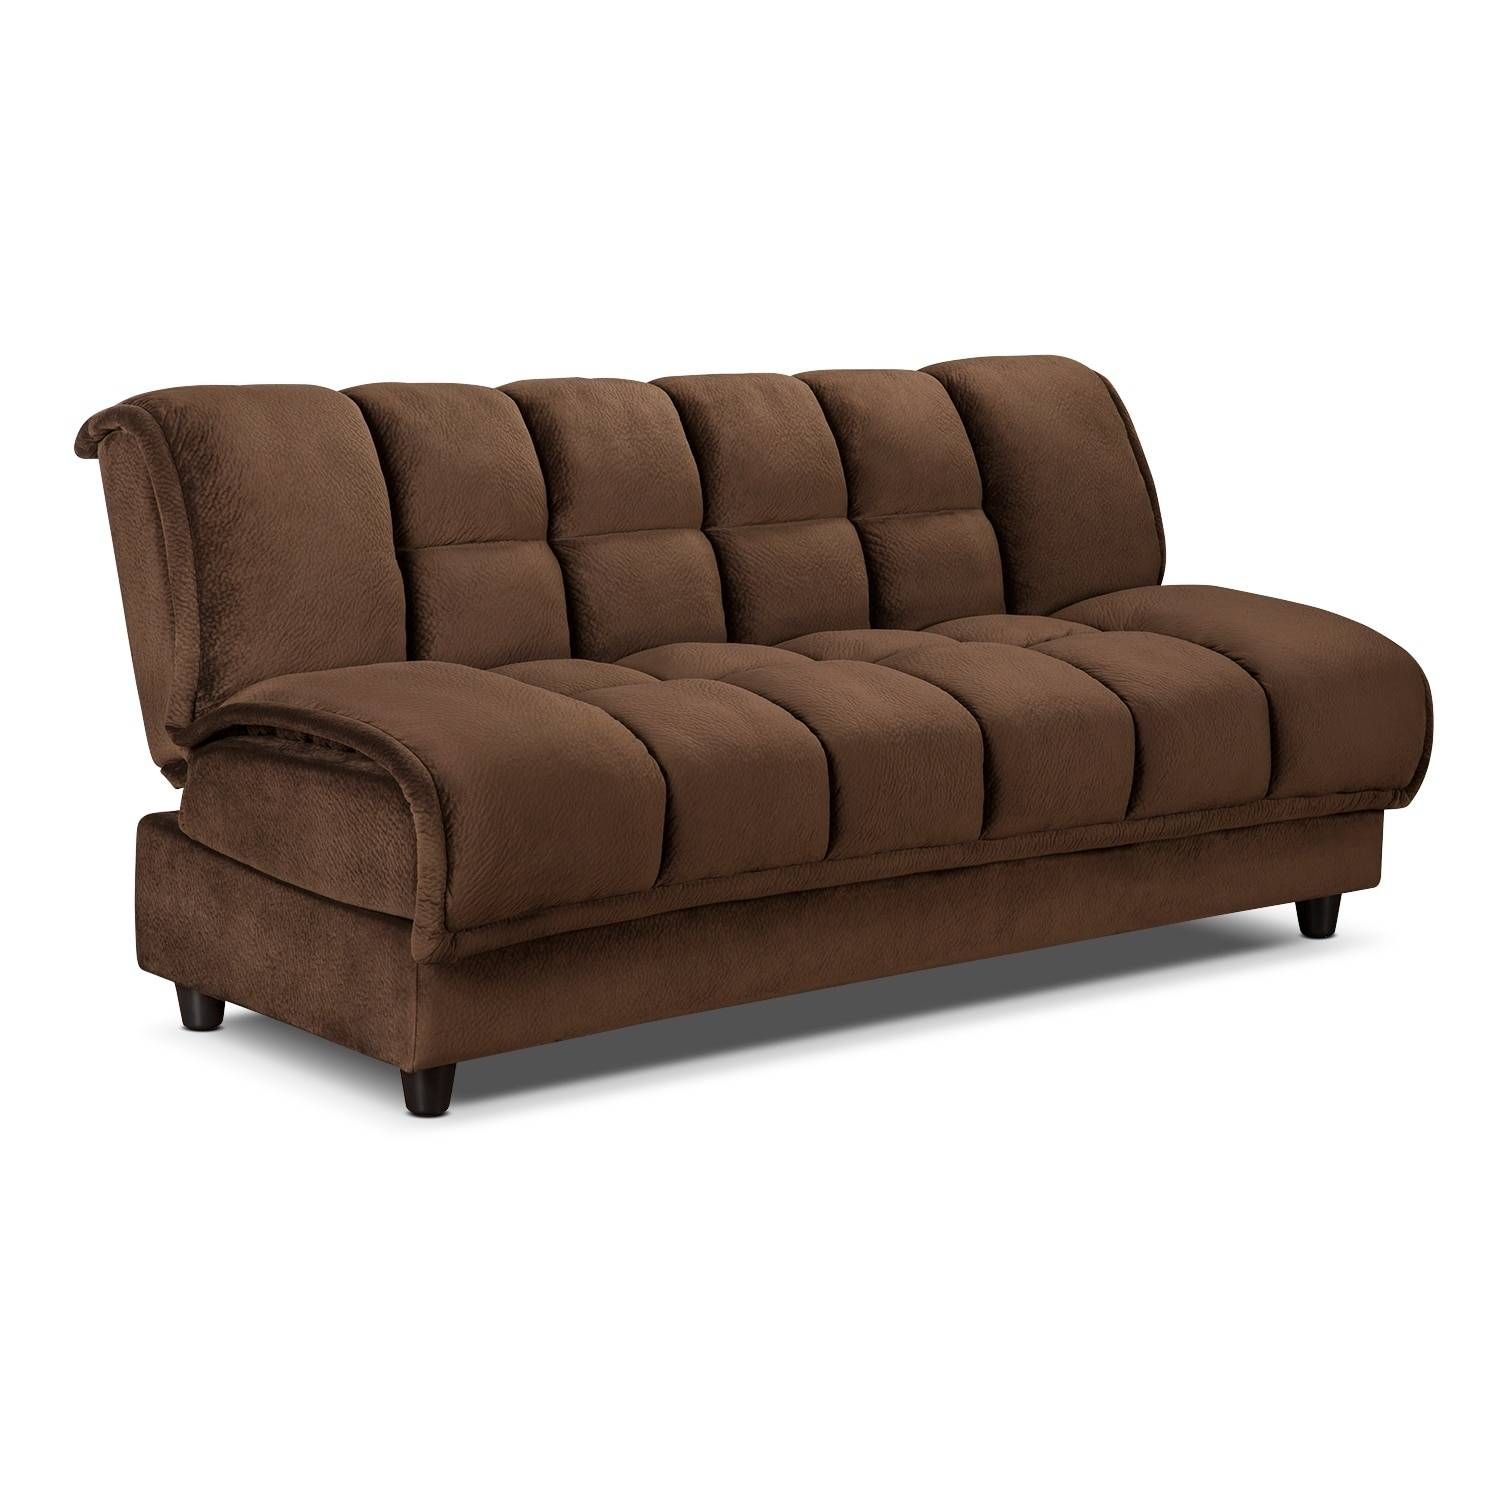 Sofas Center : Futon Sleeper Sofa New Mod Mid Century Gray Regarding Mod Sofas (View 15 of 30)